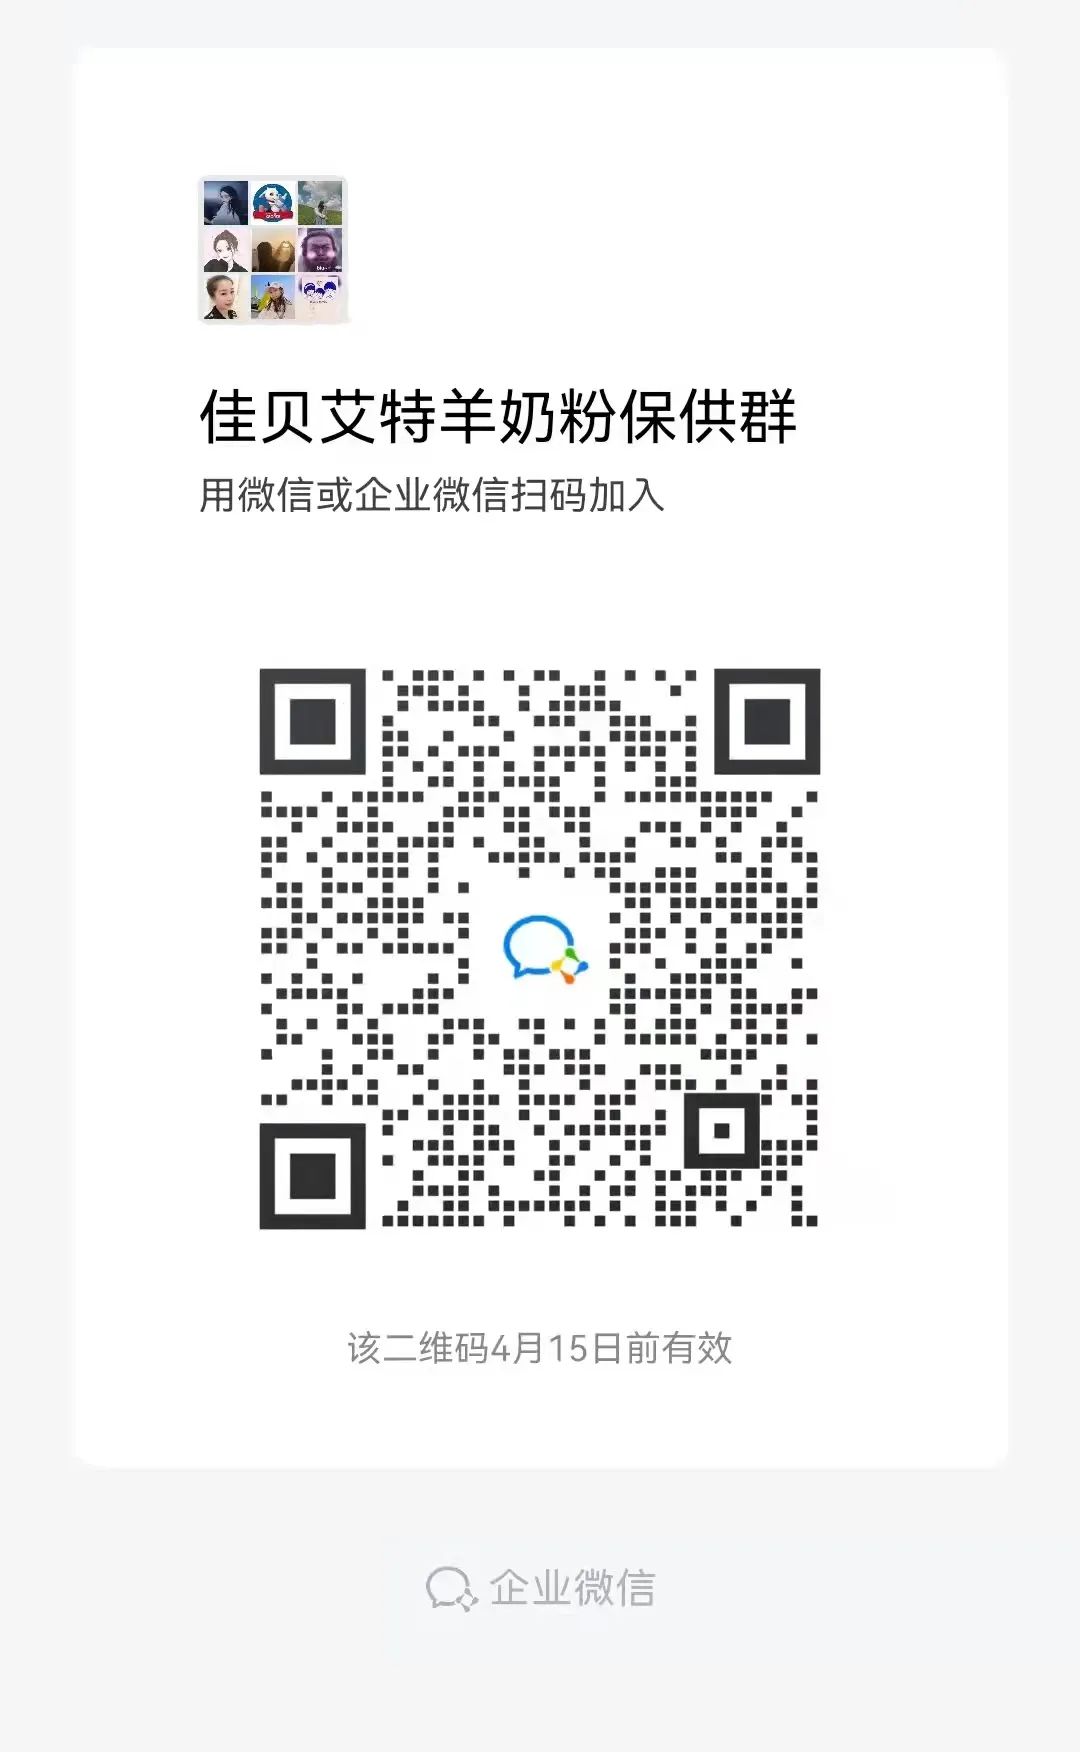 WeChat Image_20220410121445.jpg